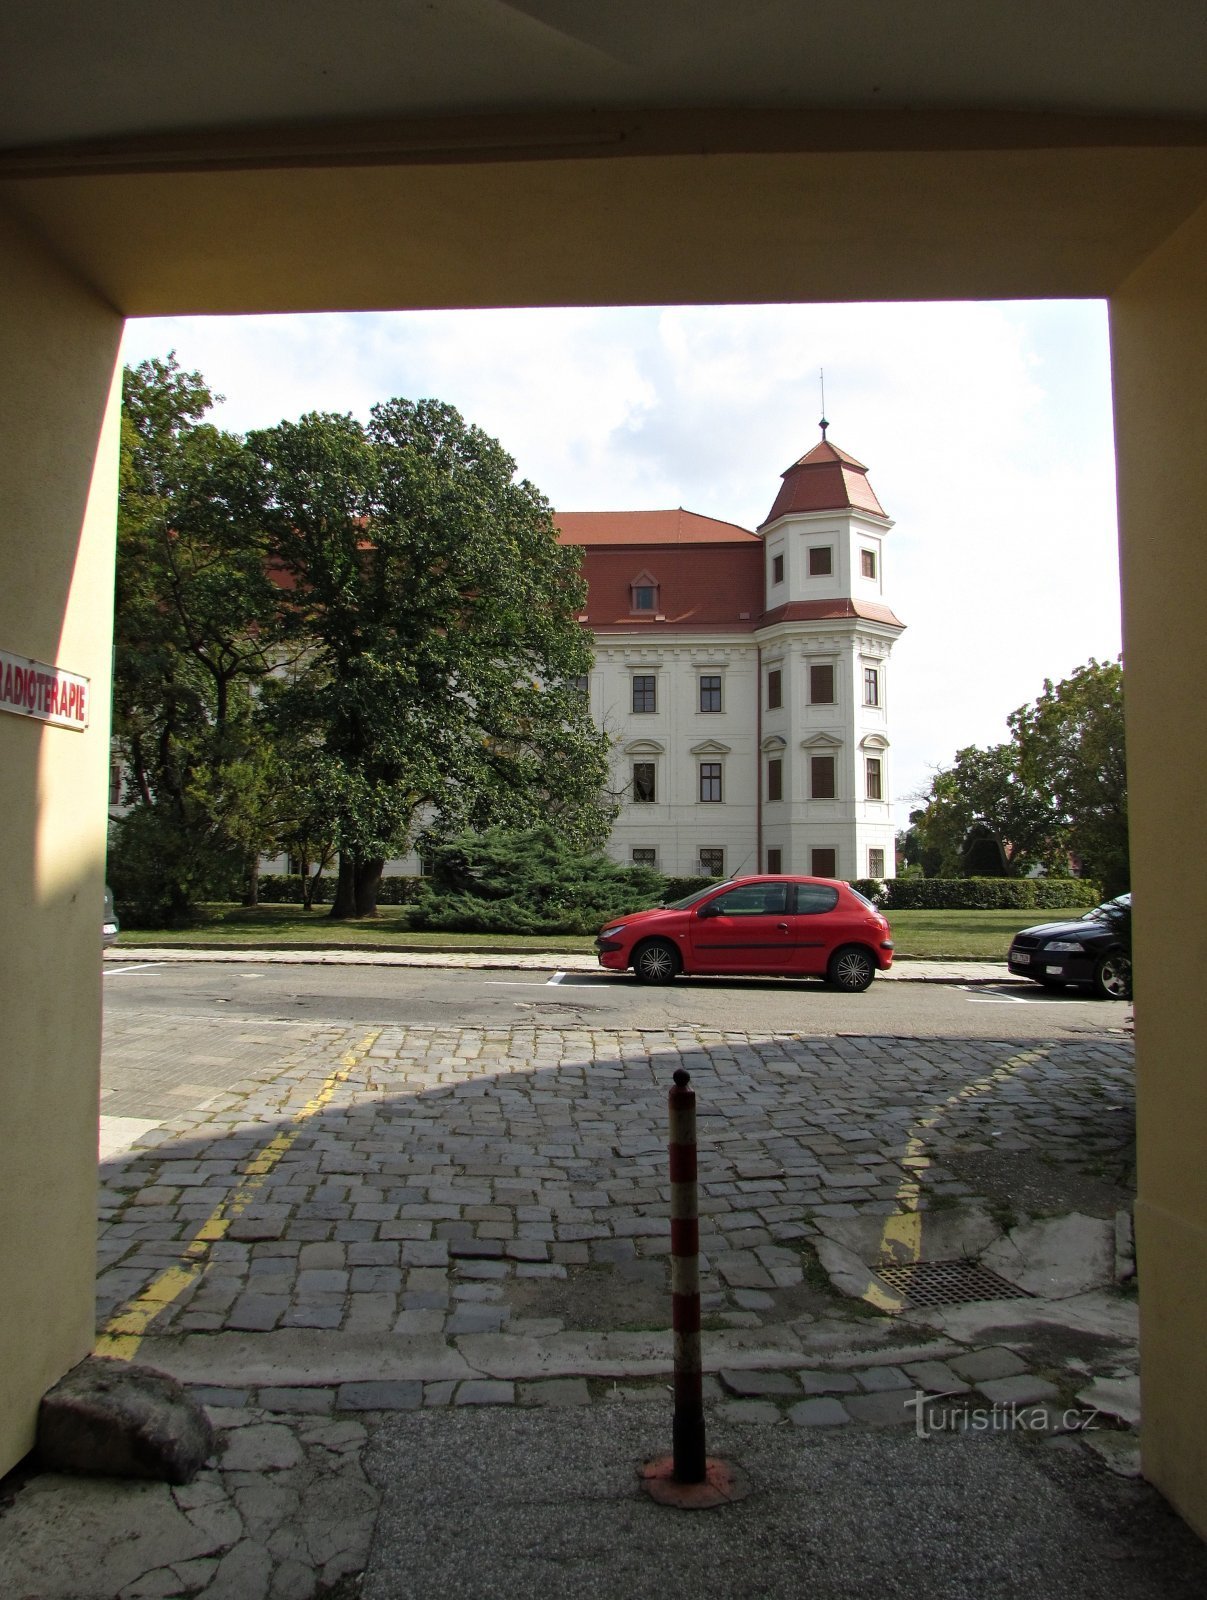 Đến Holešov thăm lò rèn, nghĩa trang Do Thái và công viên lâu đài